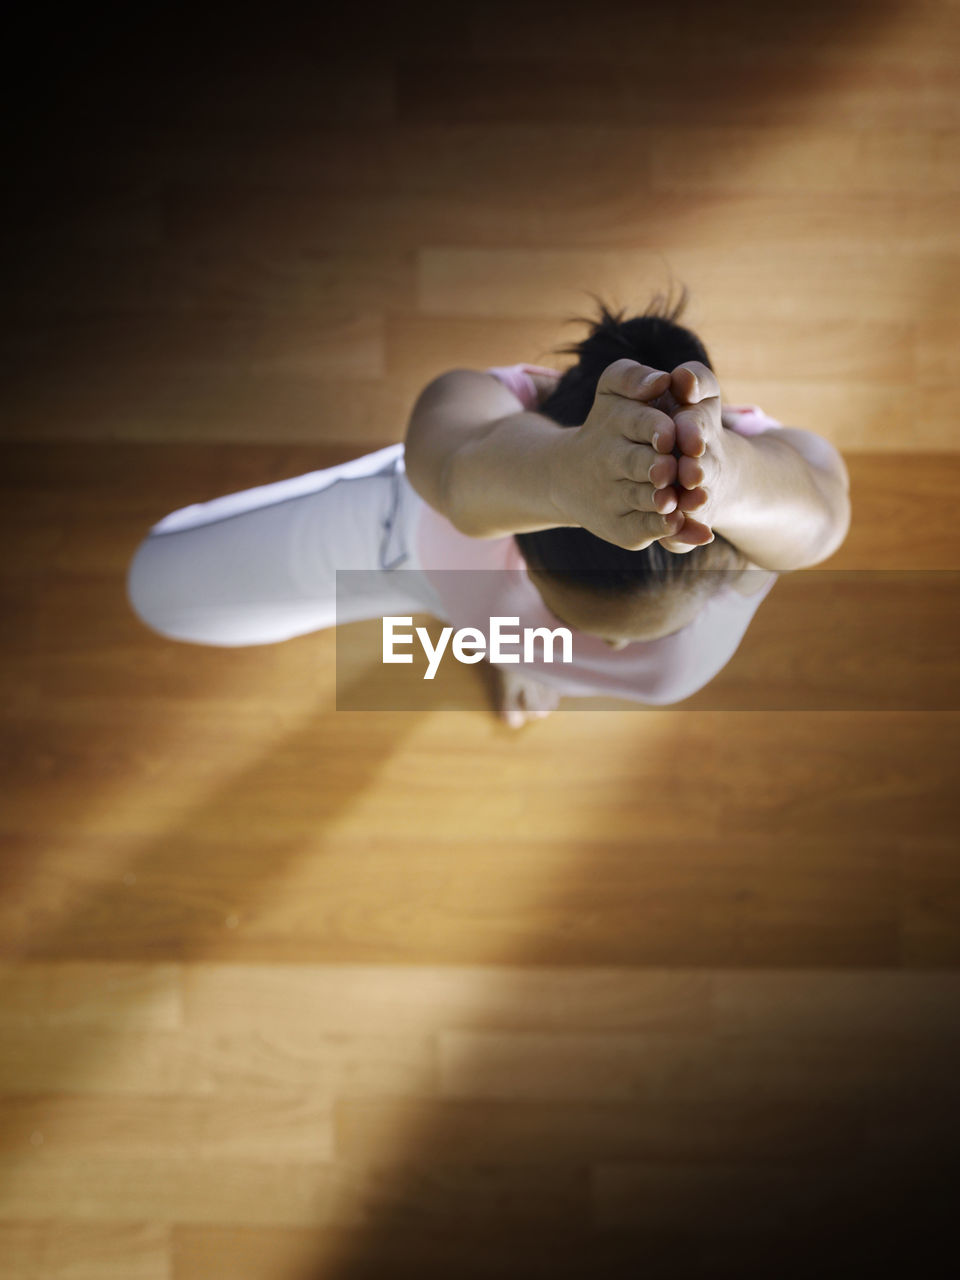 Directly above shot of woman practicing yoga on hardwood floor